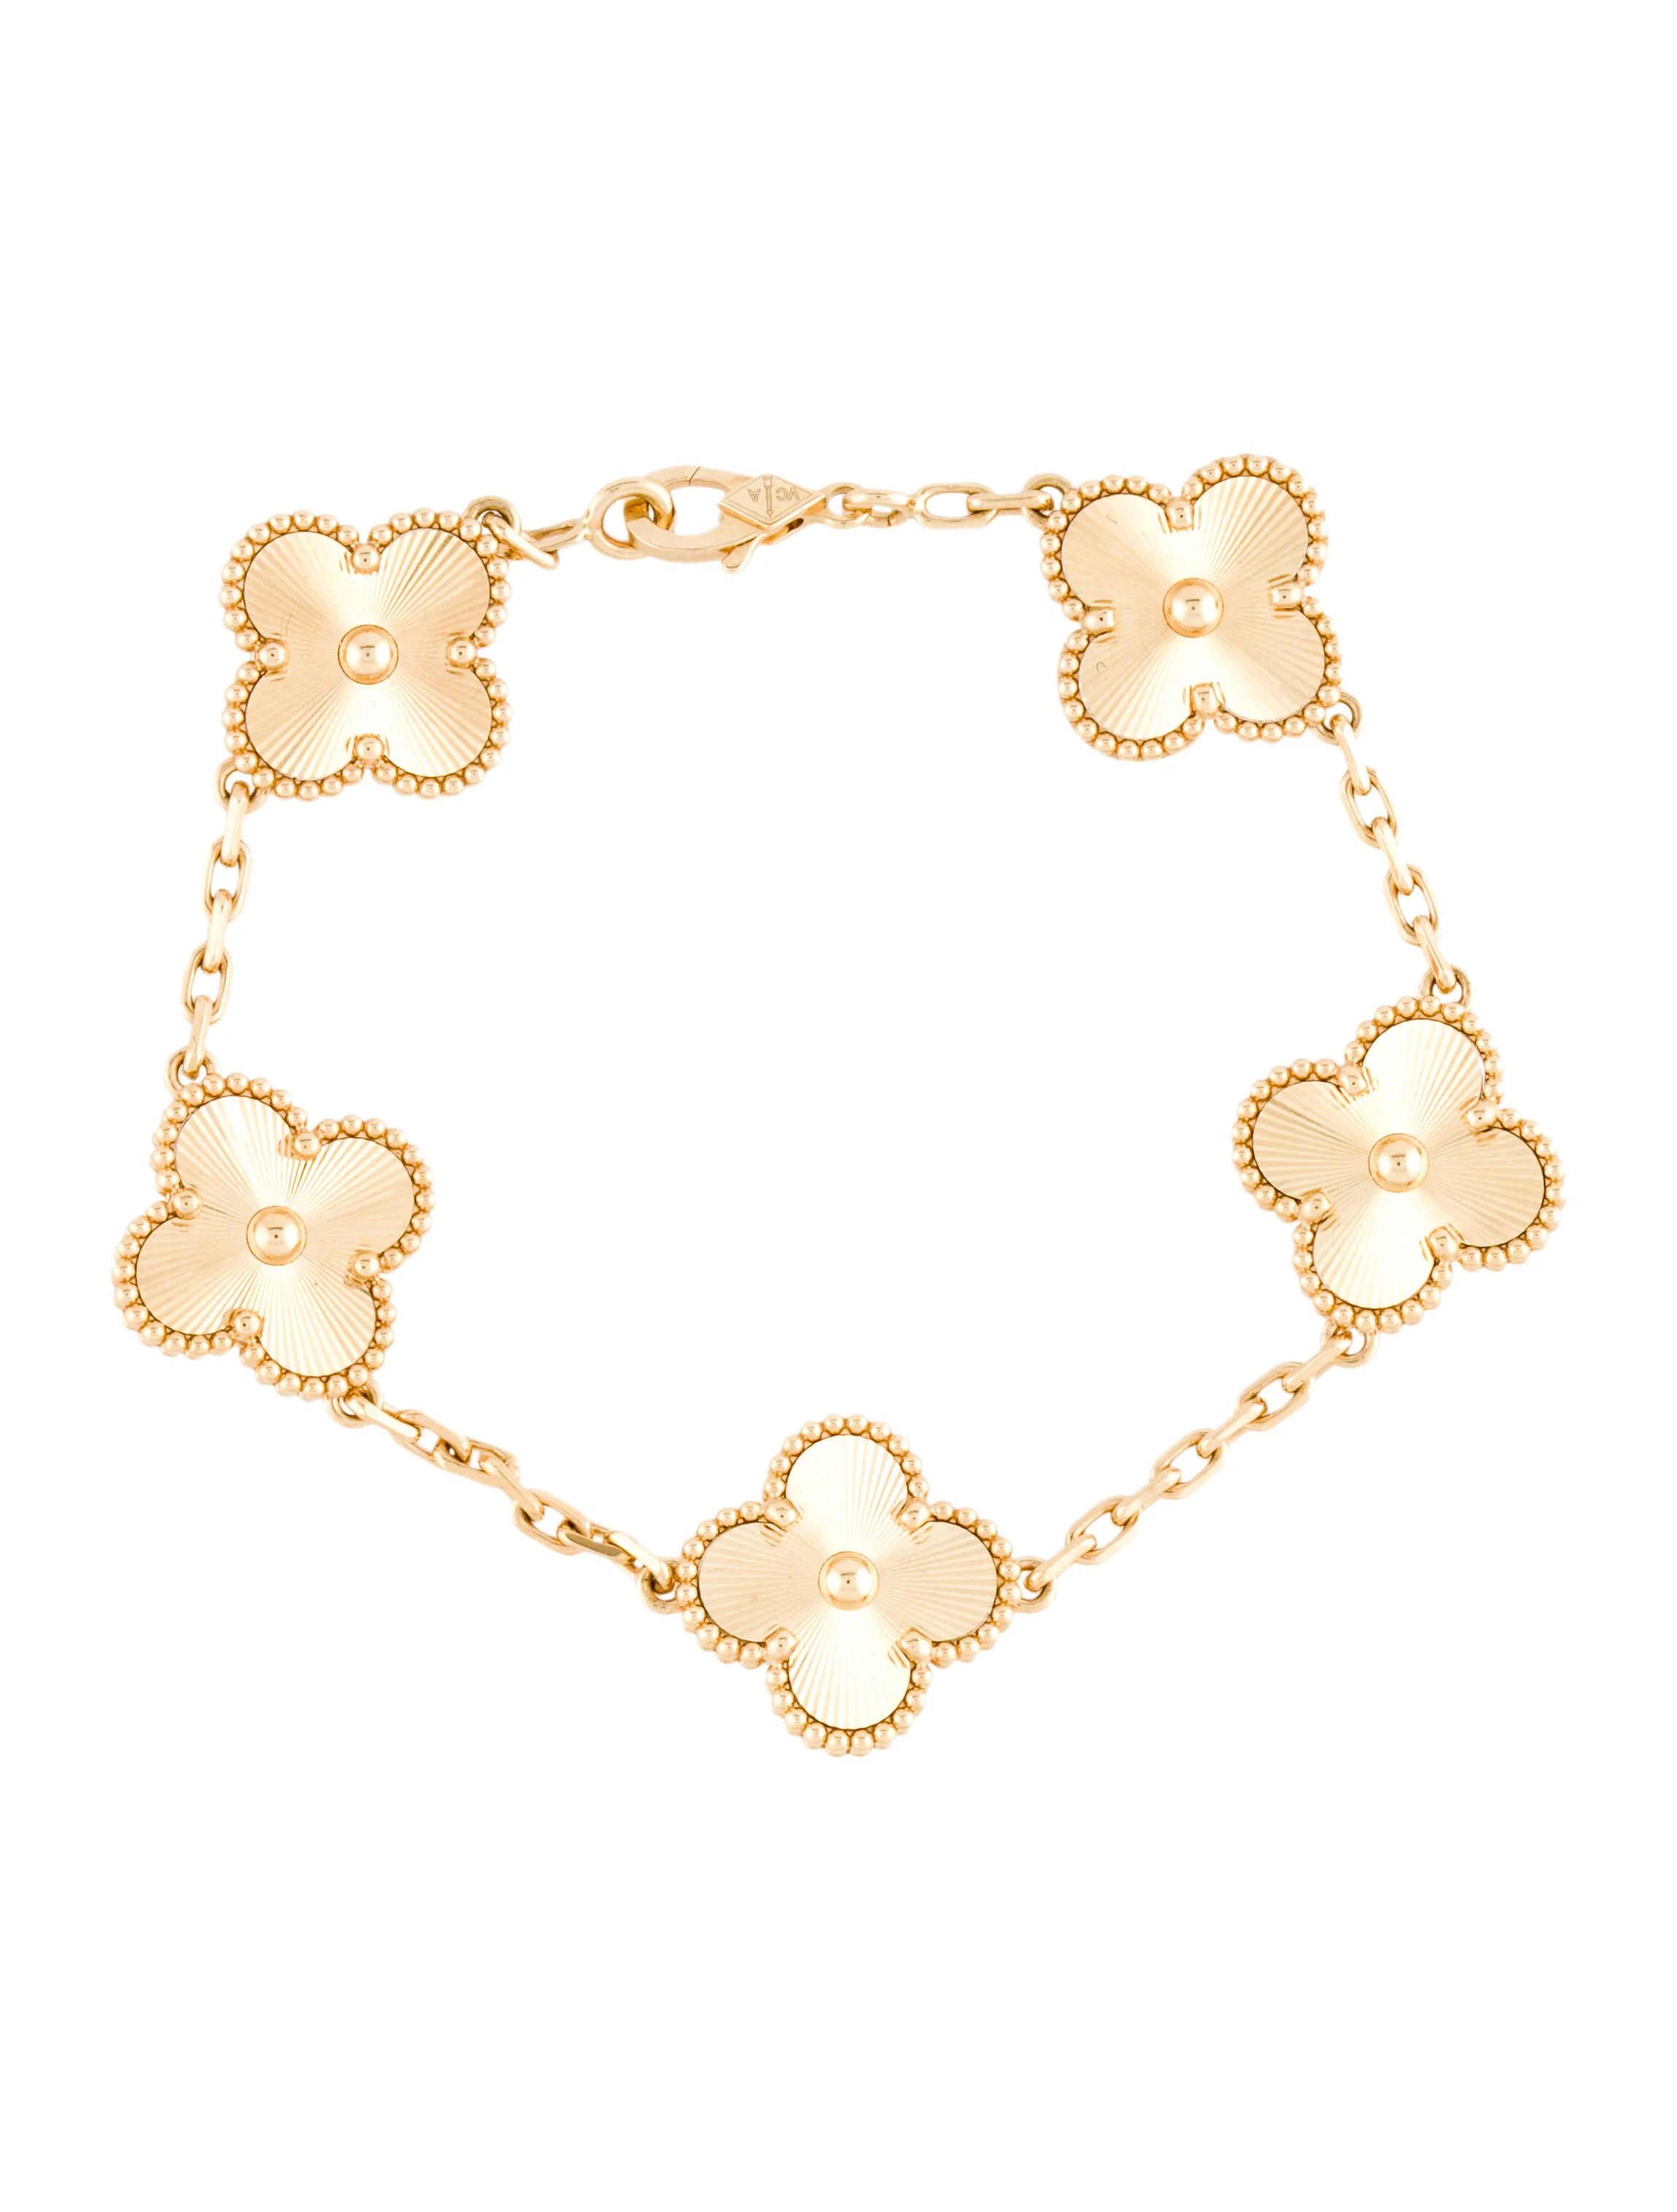 Vintage 5 Motifs Alhambra Bracelet | The RealReal